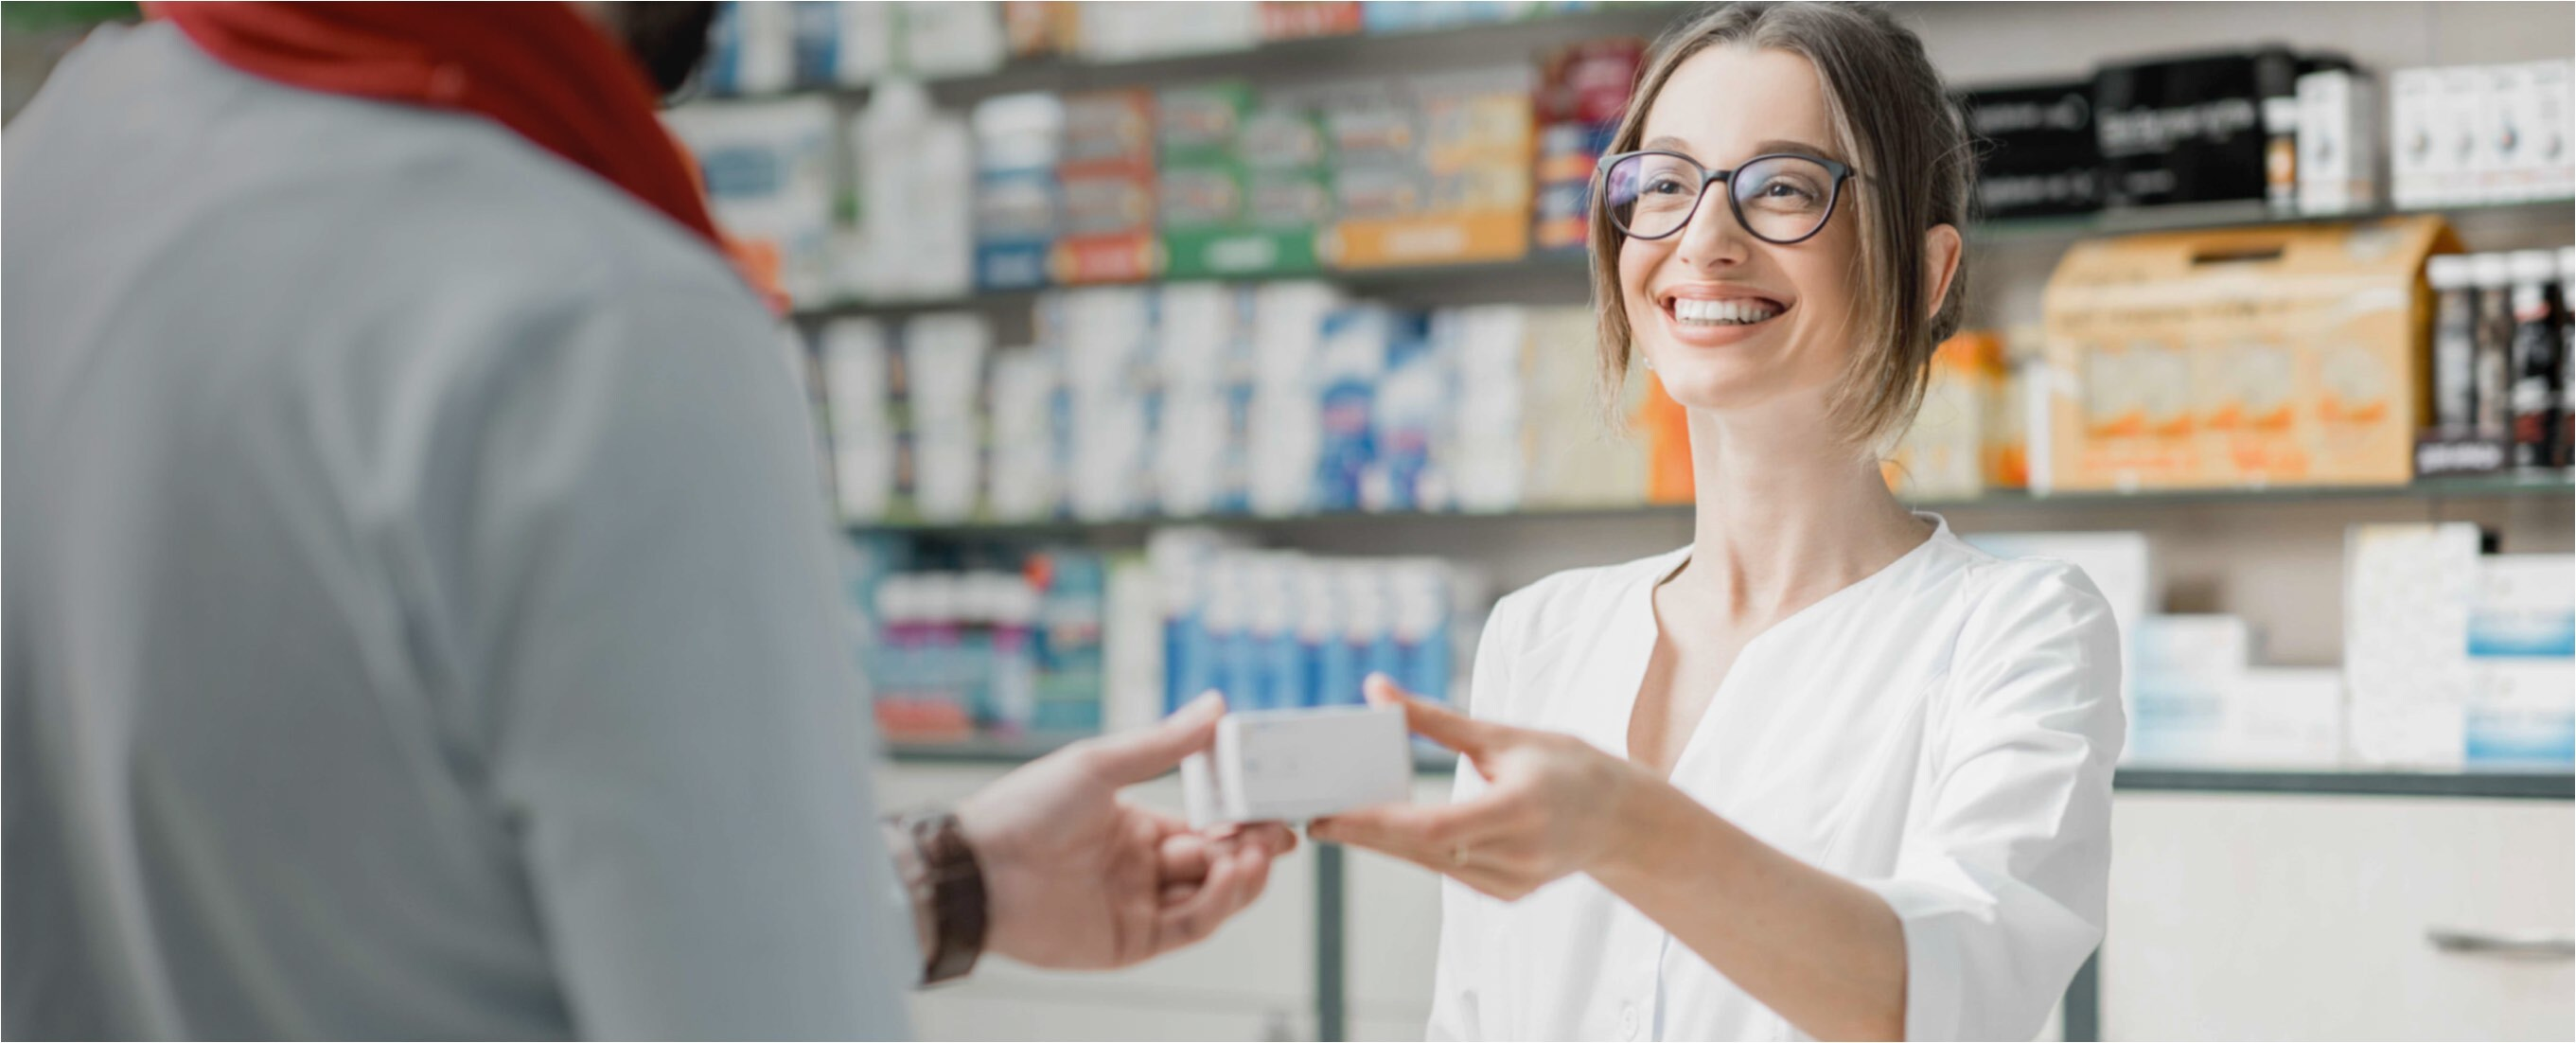 Mujer sonriente cogiendo un producto de la mano de un farmacéutico